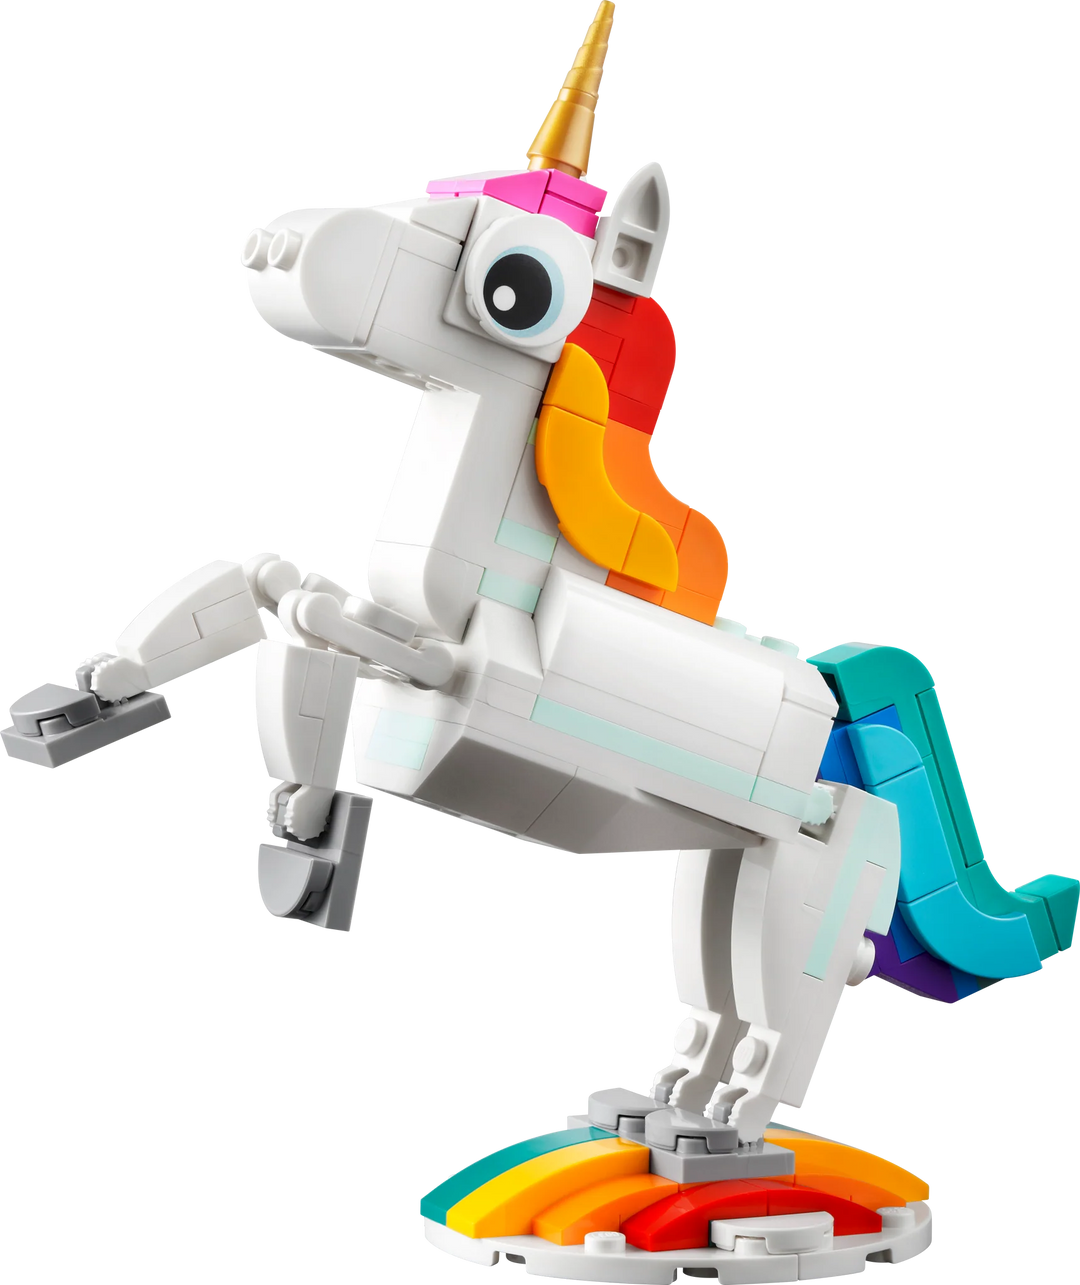 LEGO® Creator™: Magical Unicorn